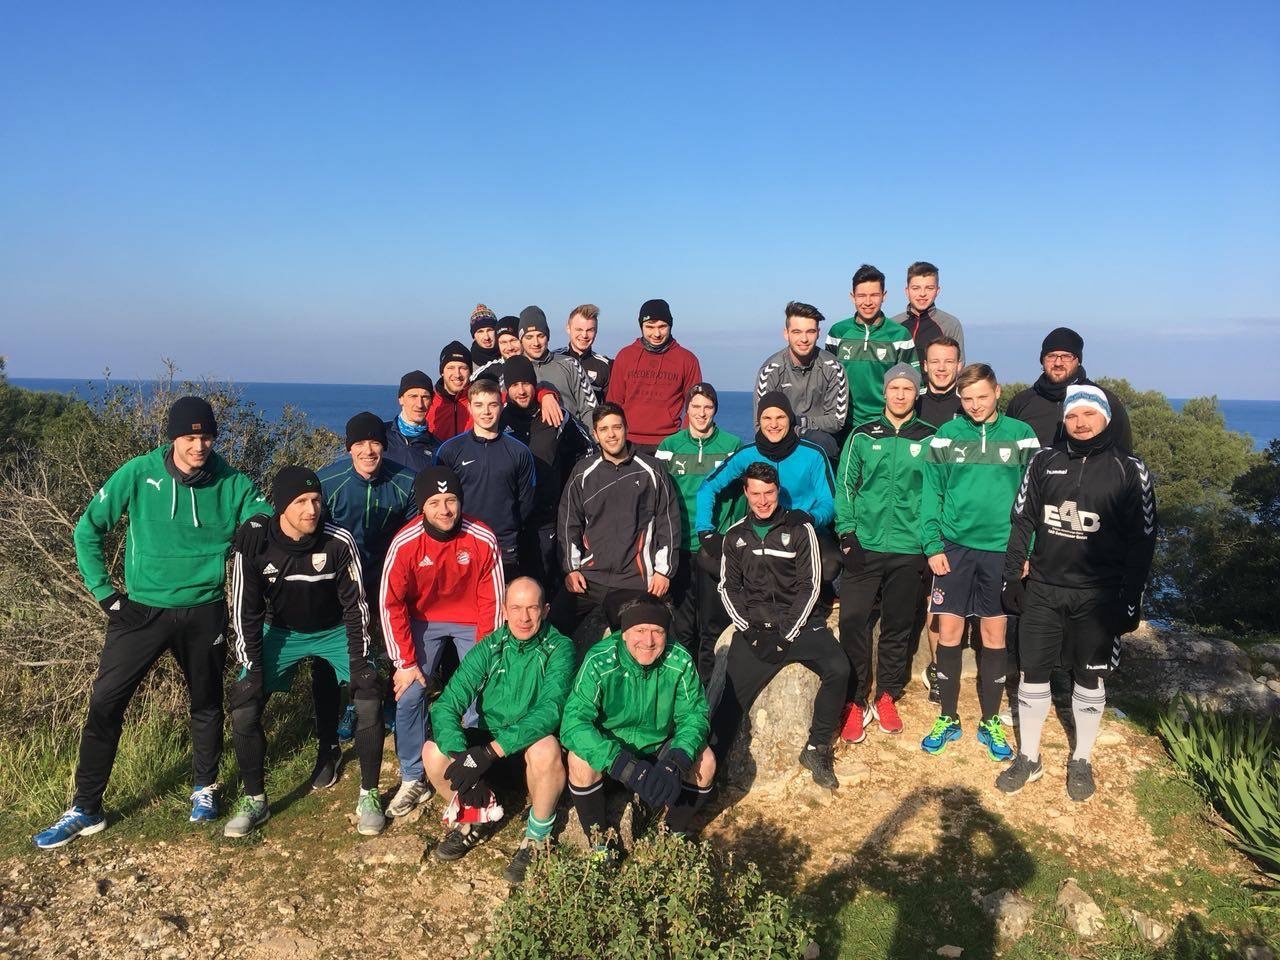 Neues vom Fußball - Trainingslager 2018 in Rovinj stärkt das Team in jeder Hinsicht!